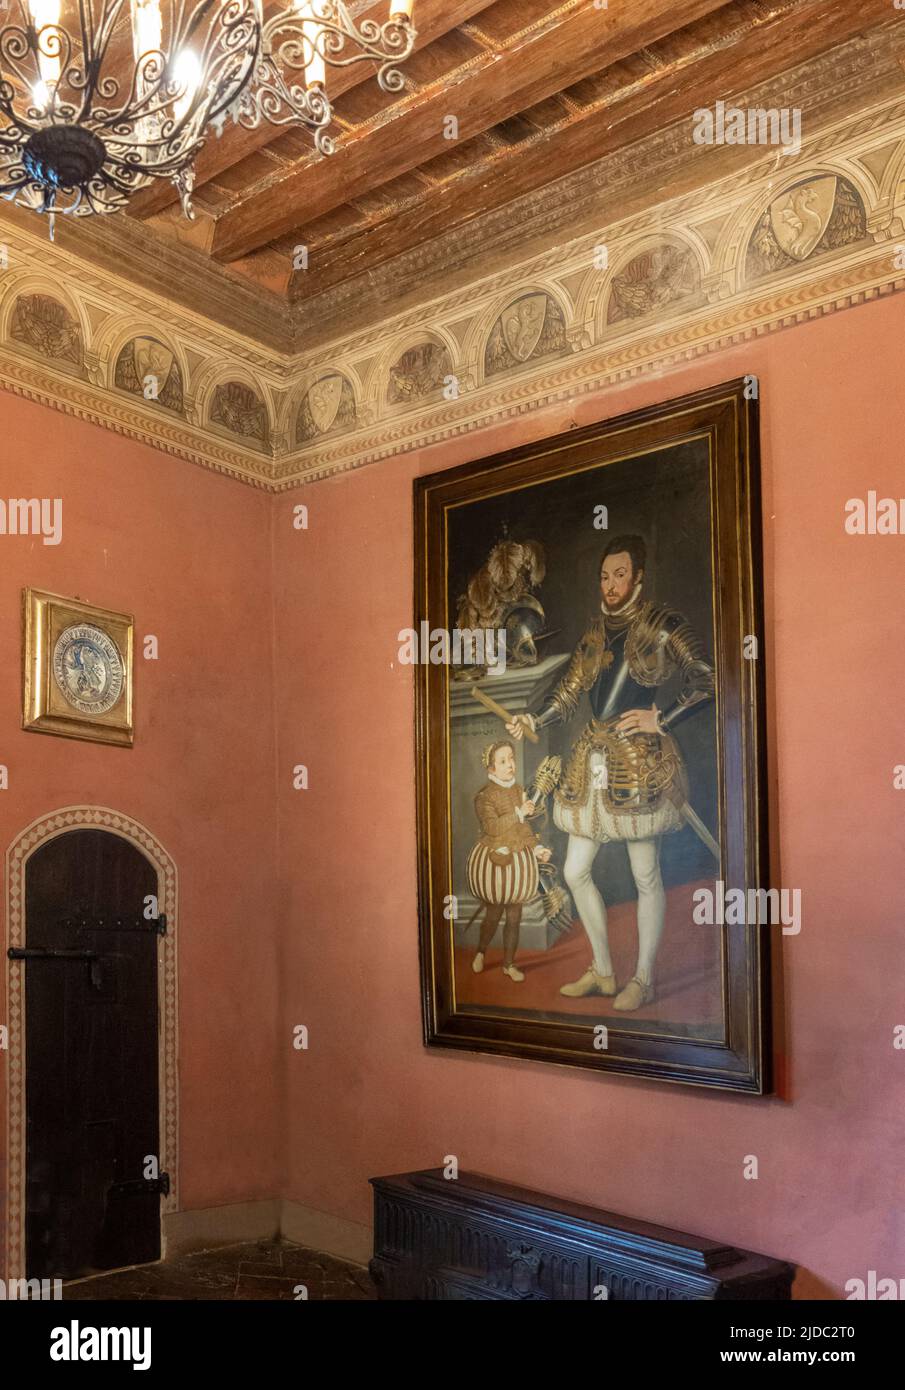 Gradara, Italia - 29 de mayo de 2018: Detalle de un retrato noble en una sala de la fortaleza de Malatesta Foto de stock